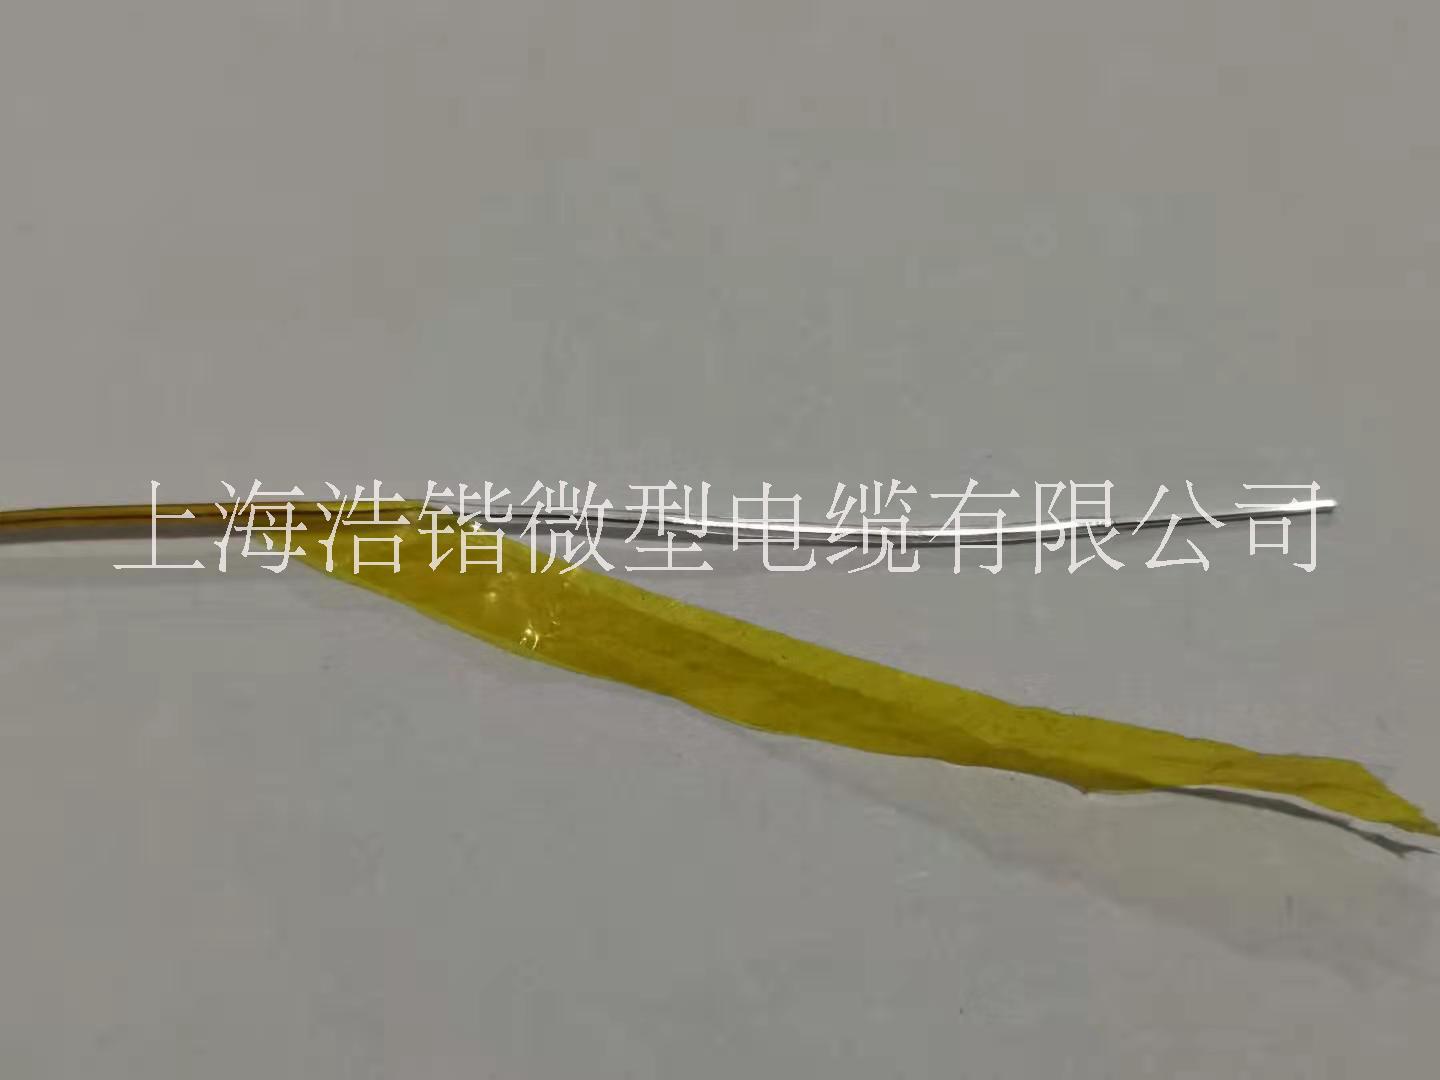 FFY1-2聚酰亚胺薄膜电线厂家报价【上海浩锴微型电缆有限公司】图片